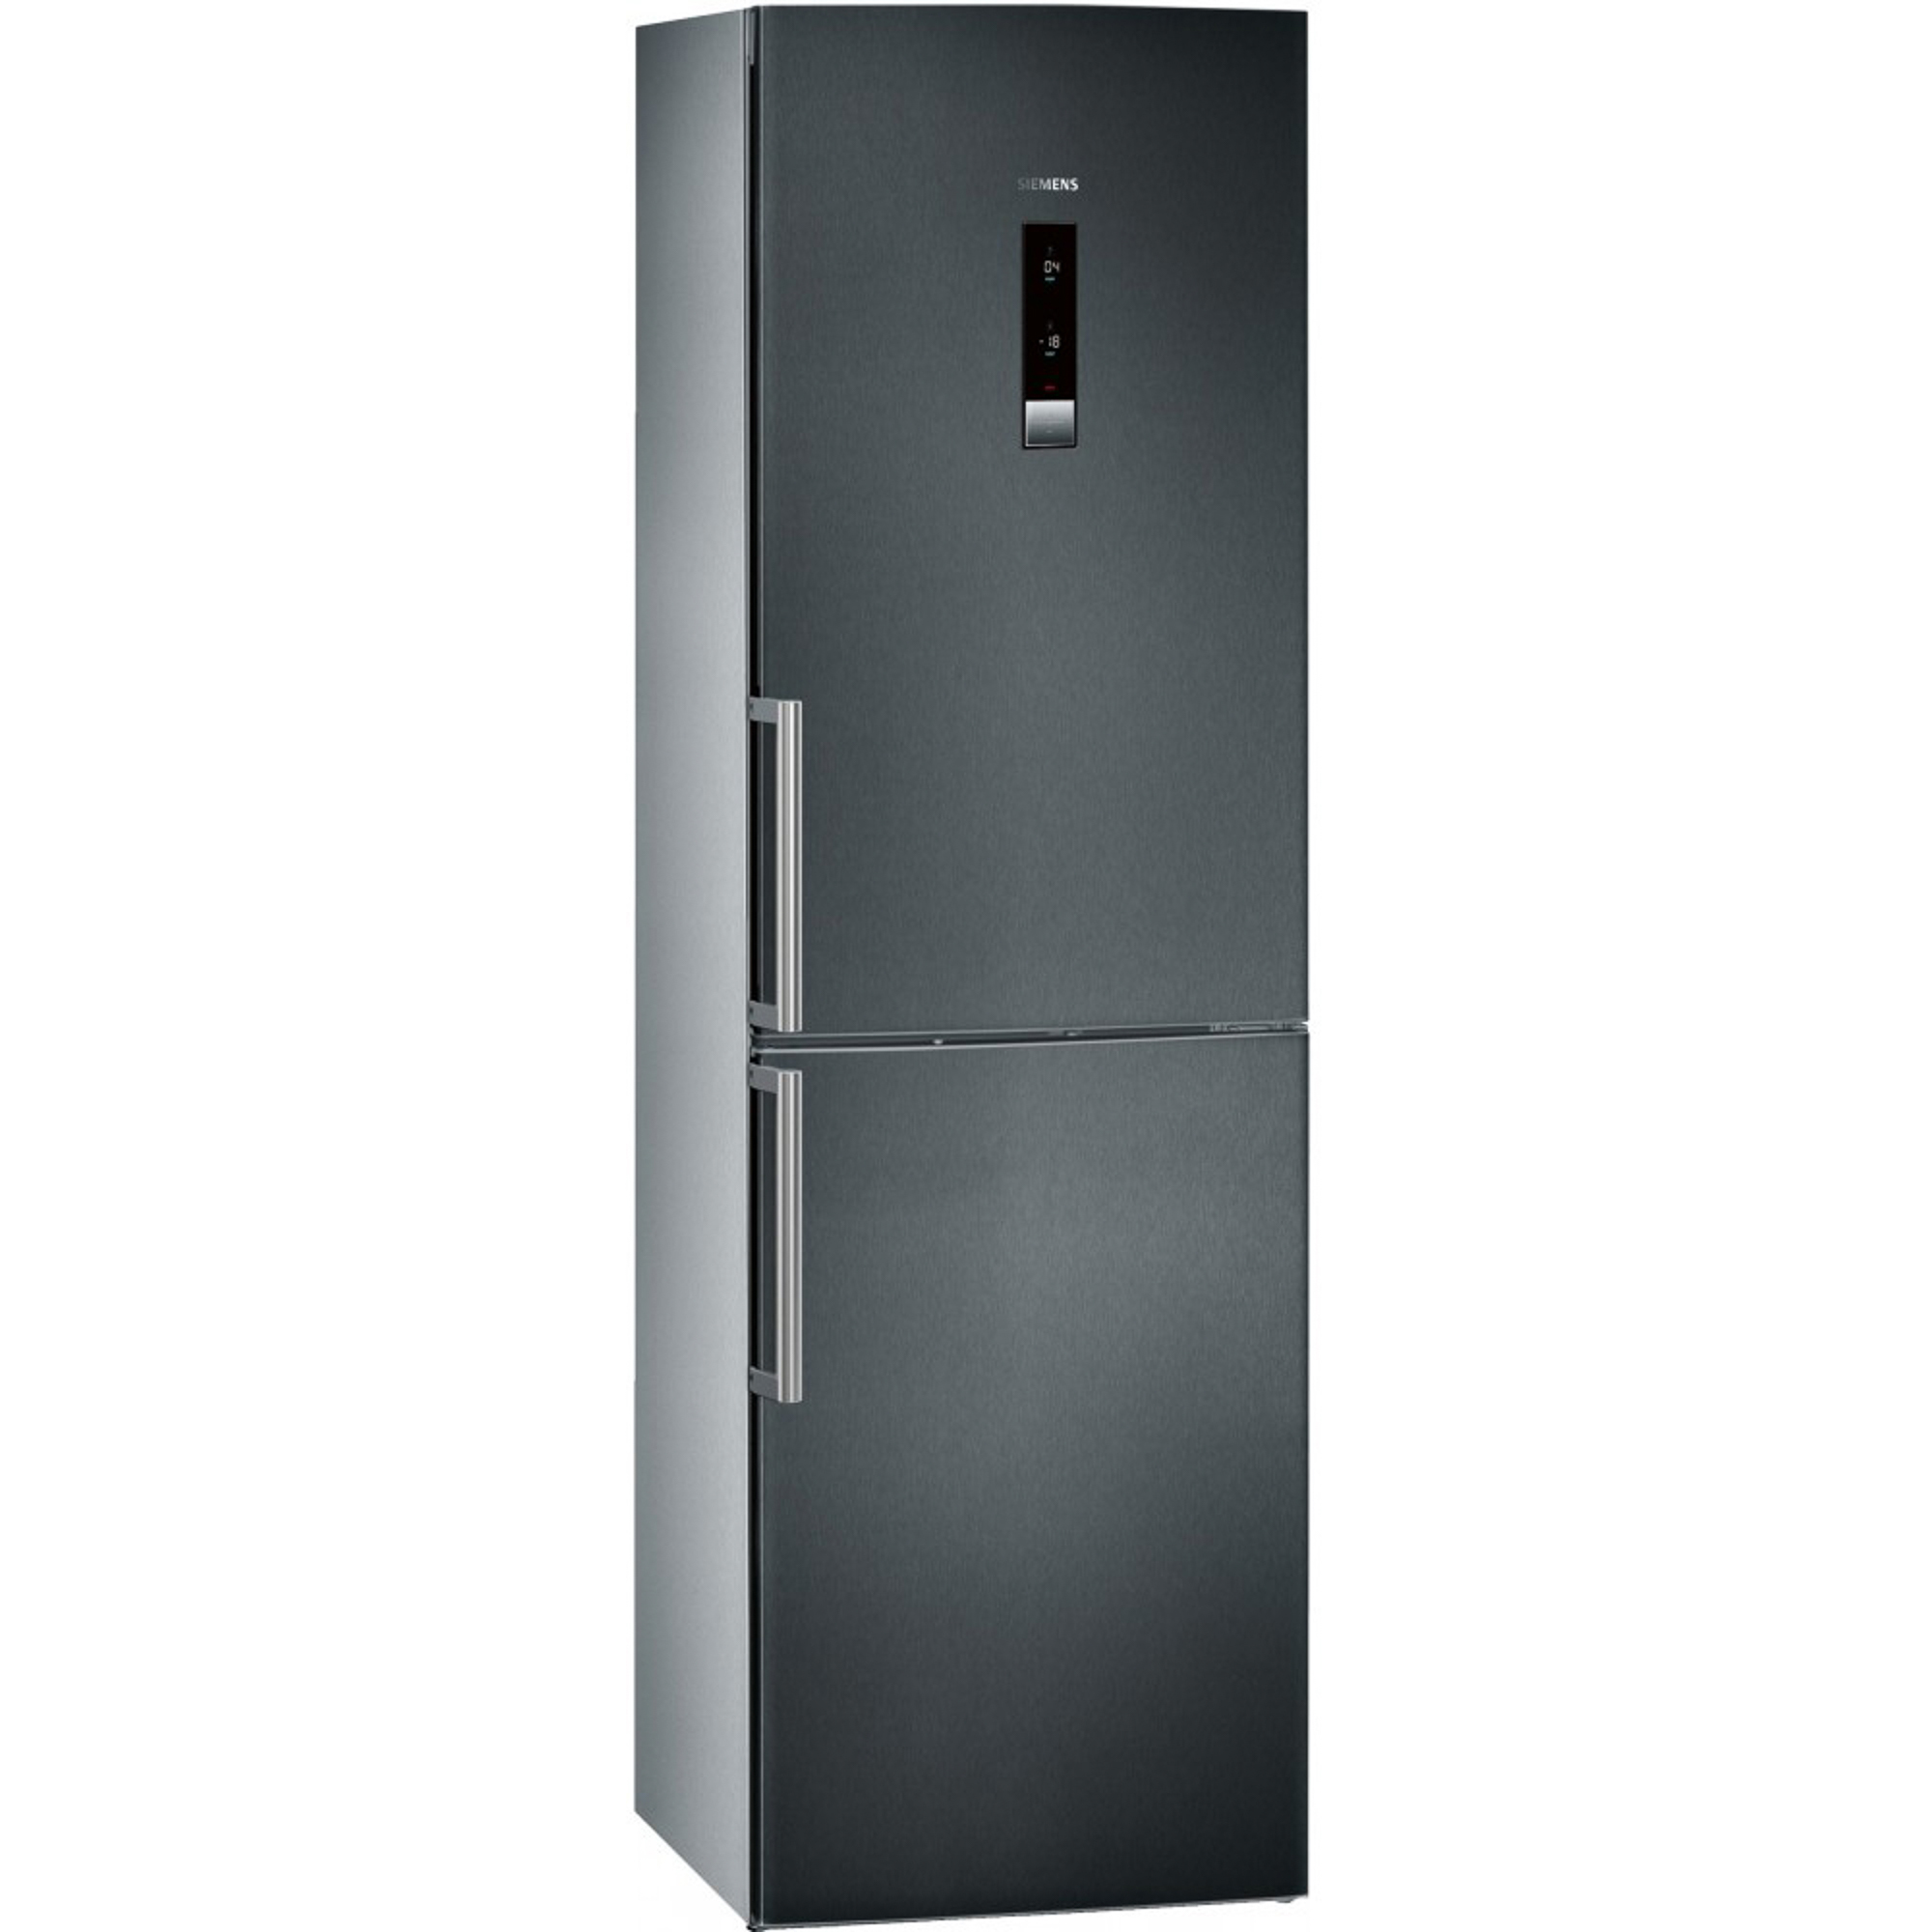 Купить холодильник в ярославле недорого. Холодильник Siemens kg39nax26. Холодильник Сименс двухкамерный kg 39. Холодильник Siemens kg39eaw21r. Холодильник Siemens kg36eal20r.